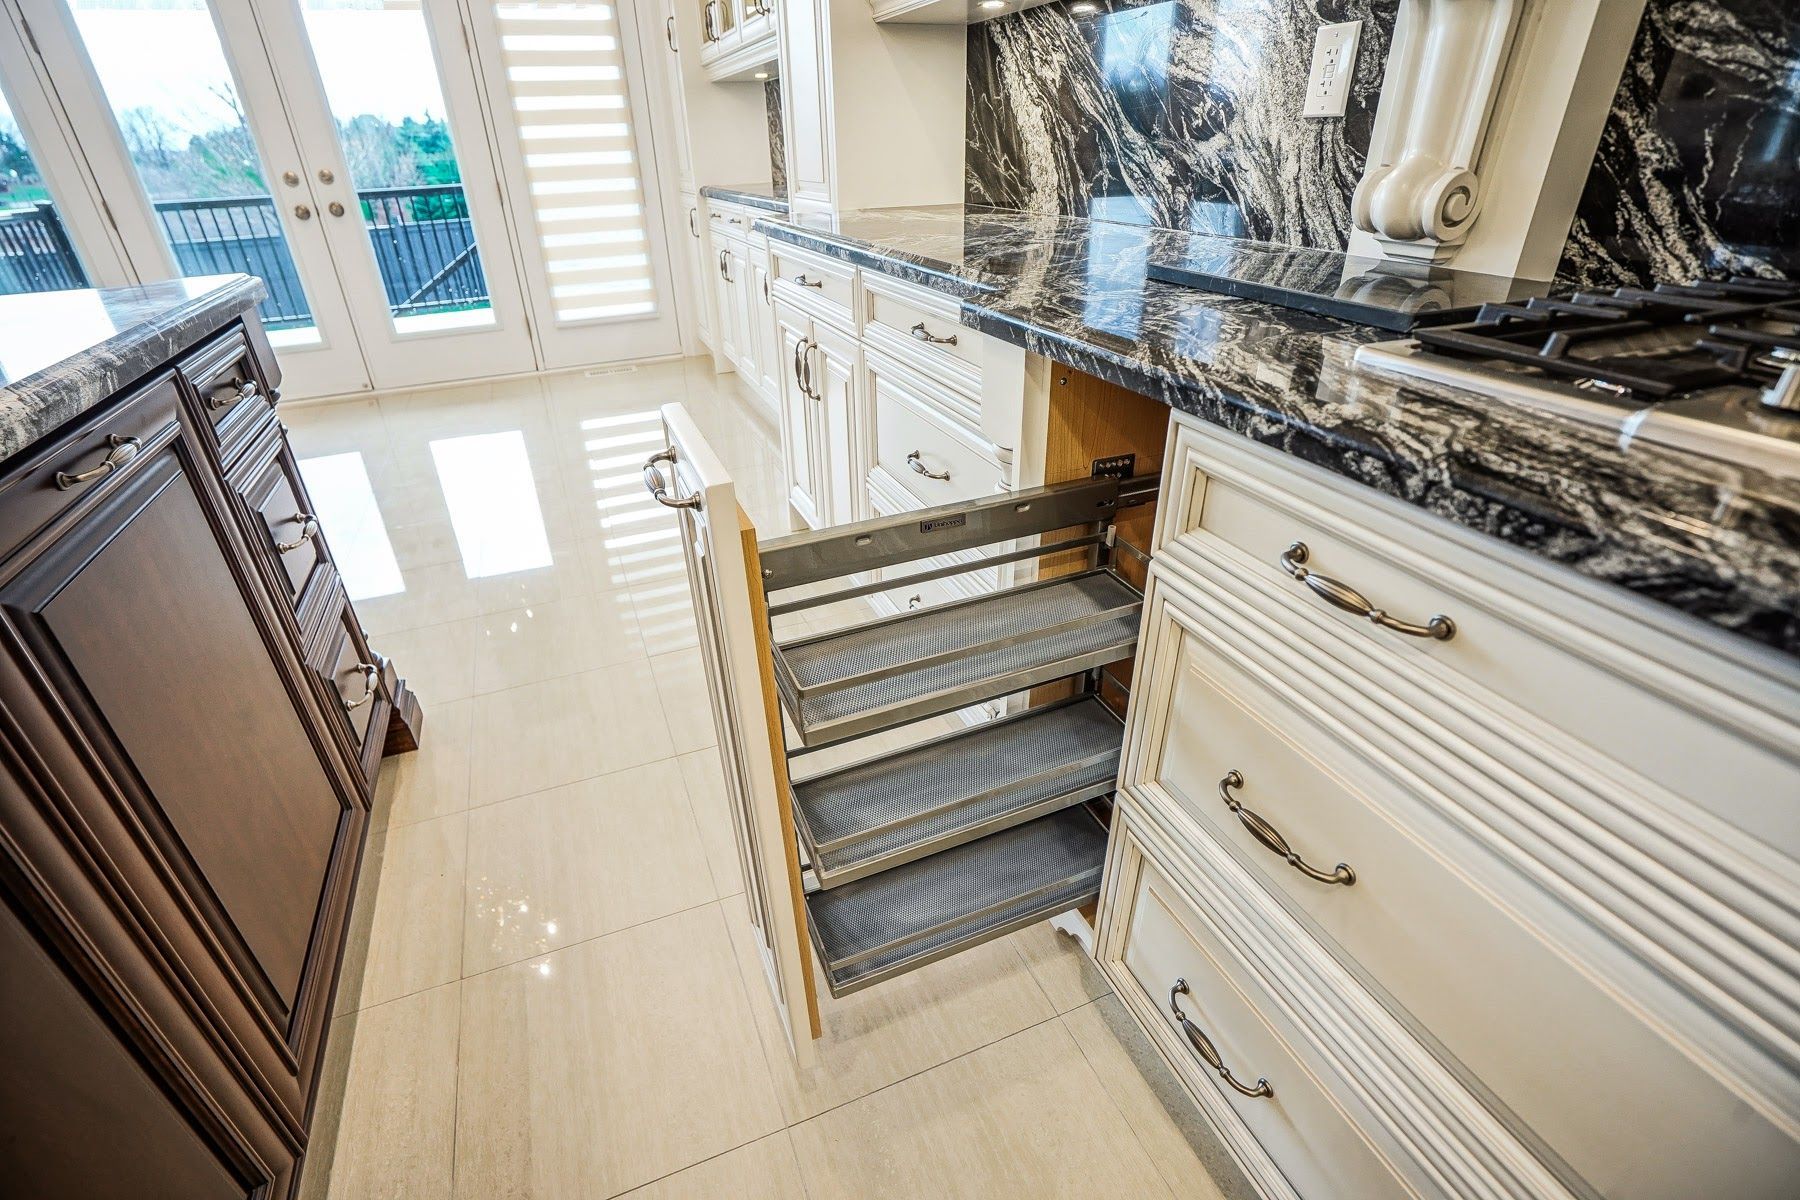 Grande Tile and Reno Plus kitchen cabinet